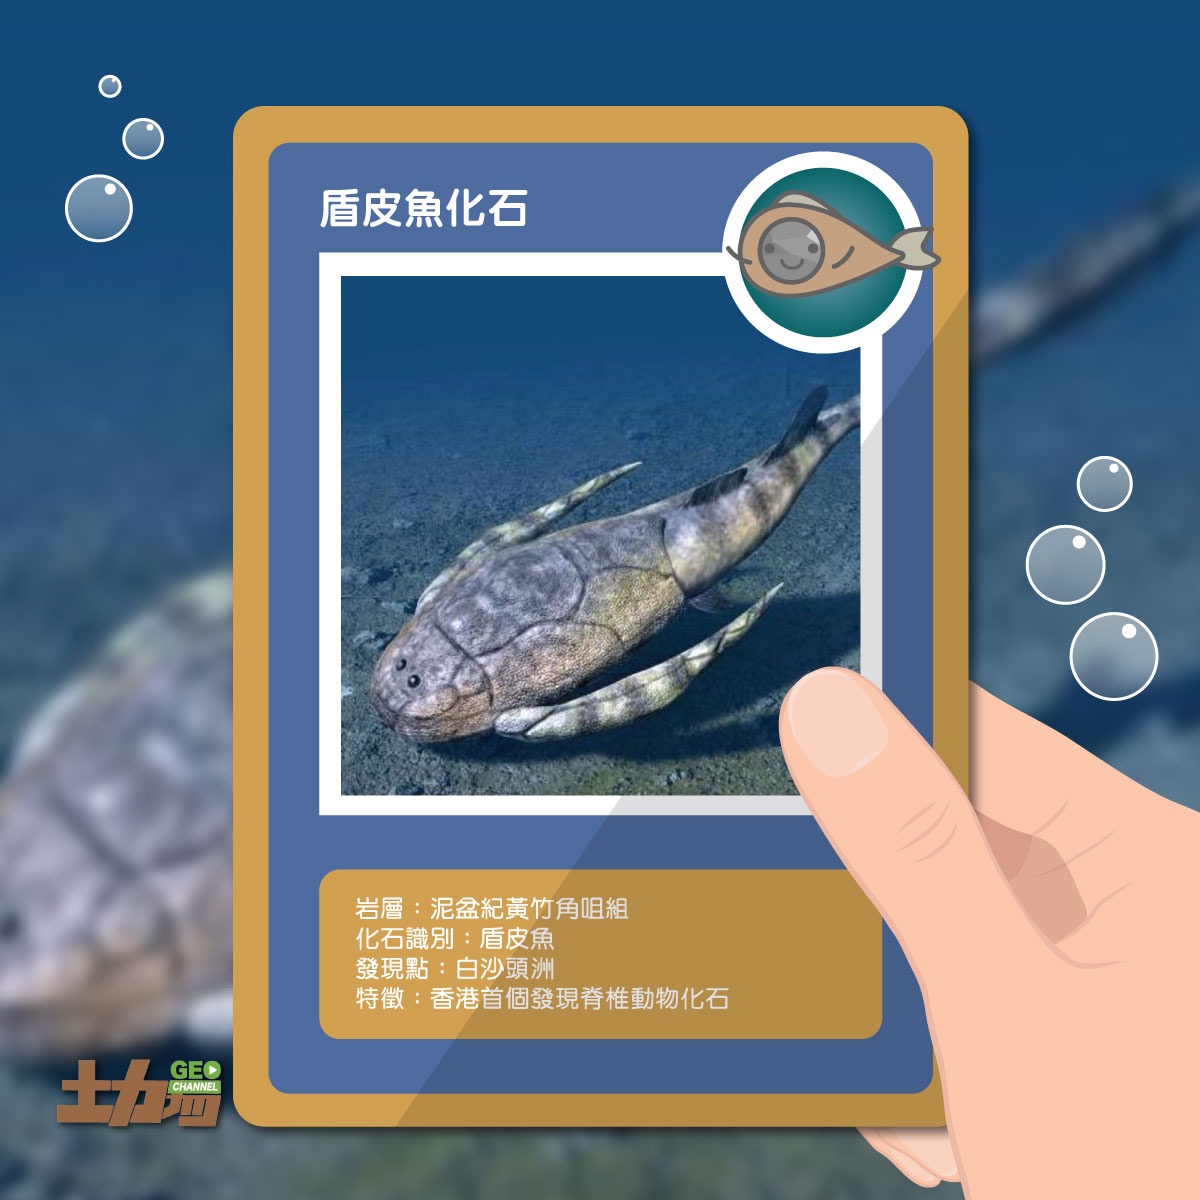 李作明教授在1980年於大埔船灣發現的魚化石（盾皮魚），是首次在香港出土泥盆紀時代的化石。（圖片來源：Geo Channel 土力場 Facebook）